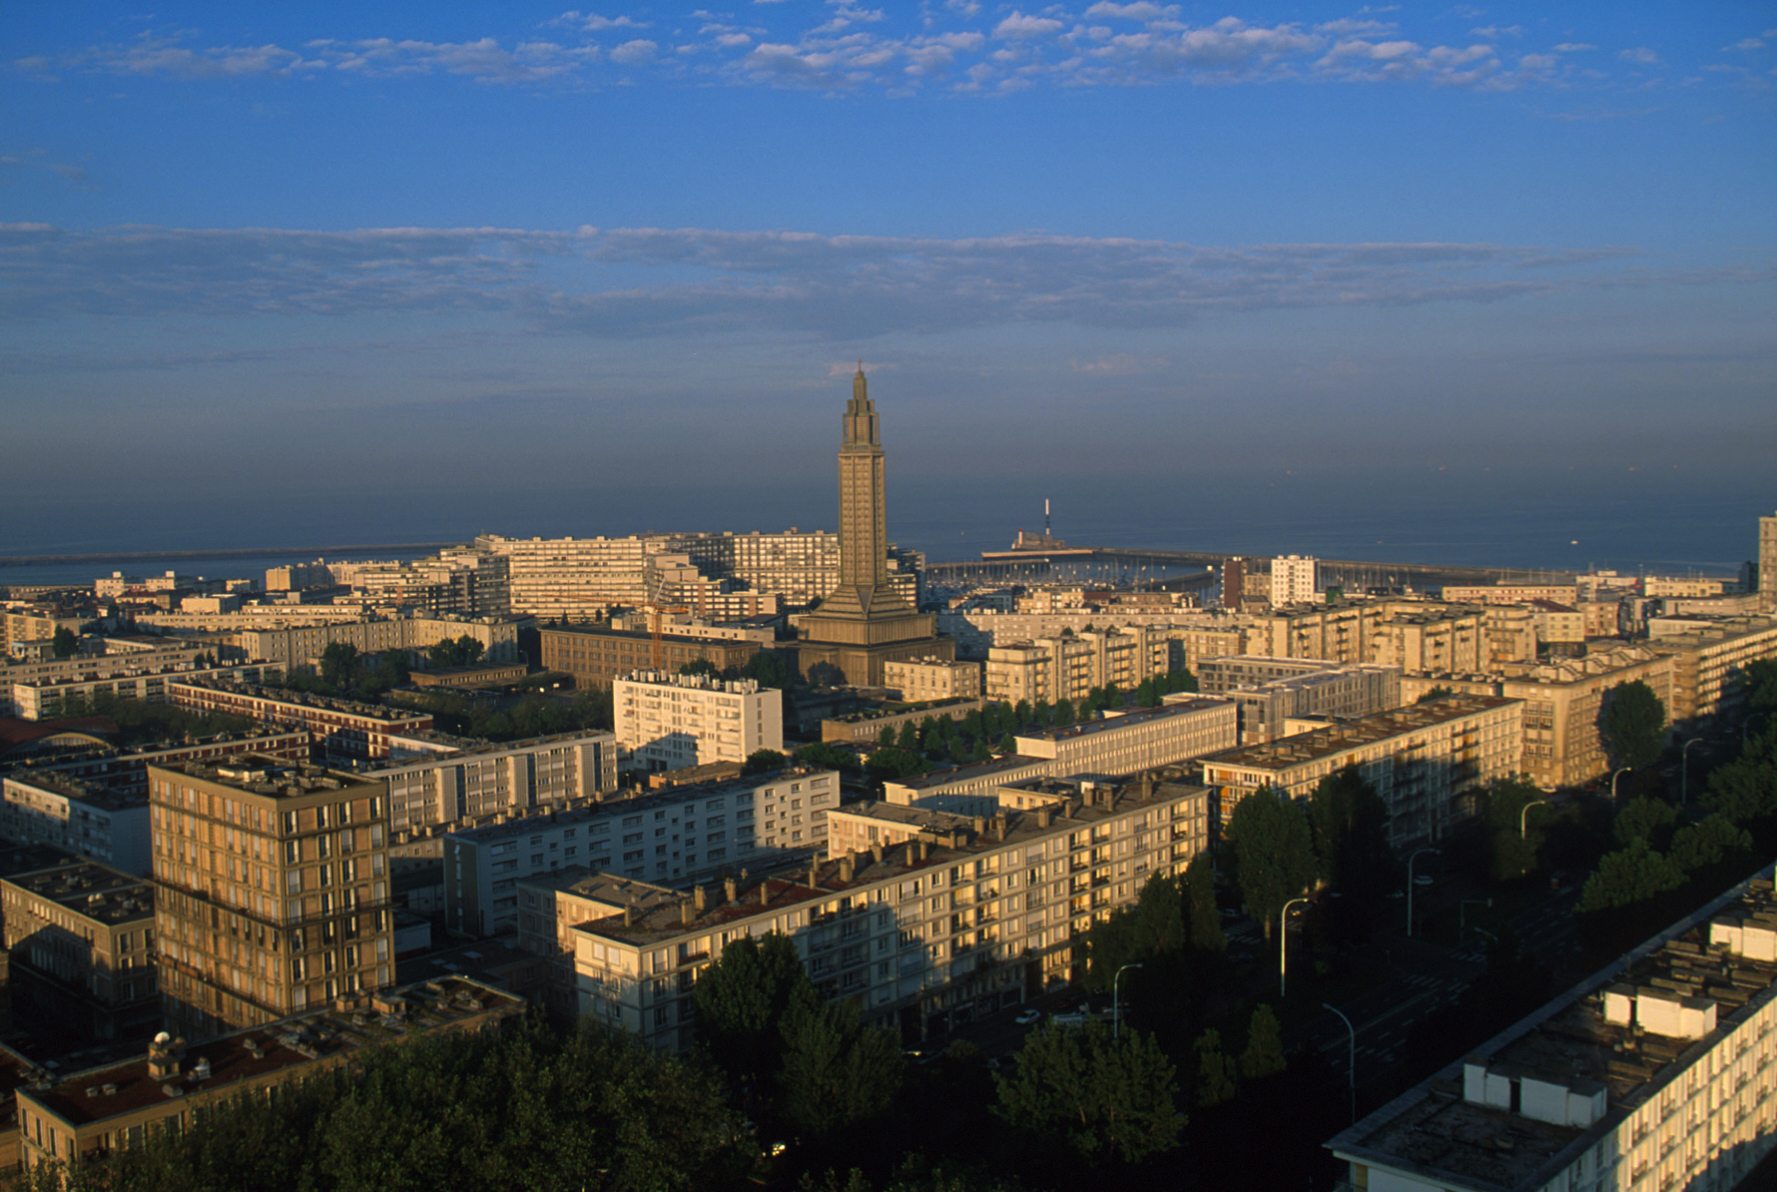 Der Architekt Auguste Perret entwarf die Pläne für die im Zweiten Weltkrieg zerstörte Stadt Le Havre. Der Stadtkern ist seit 2005 Weltkulturerbe. (c) Eric Levilly/wikimedia commons/CC-BY-1.0